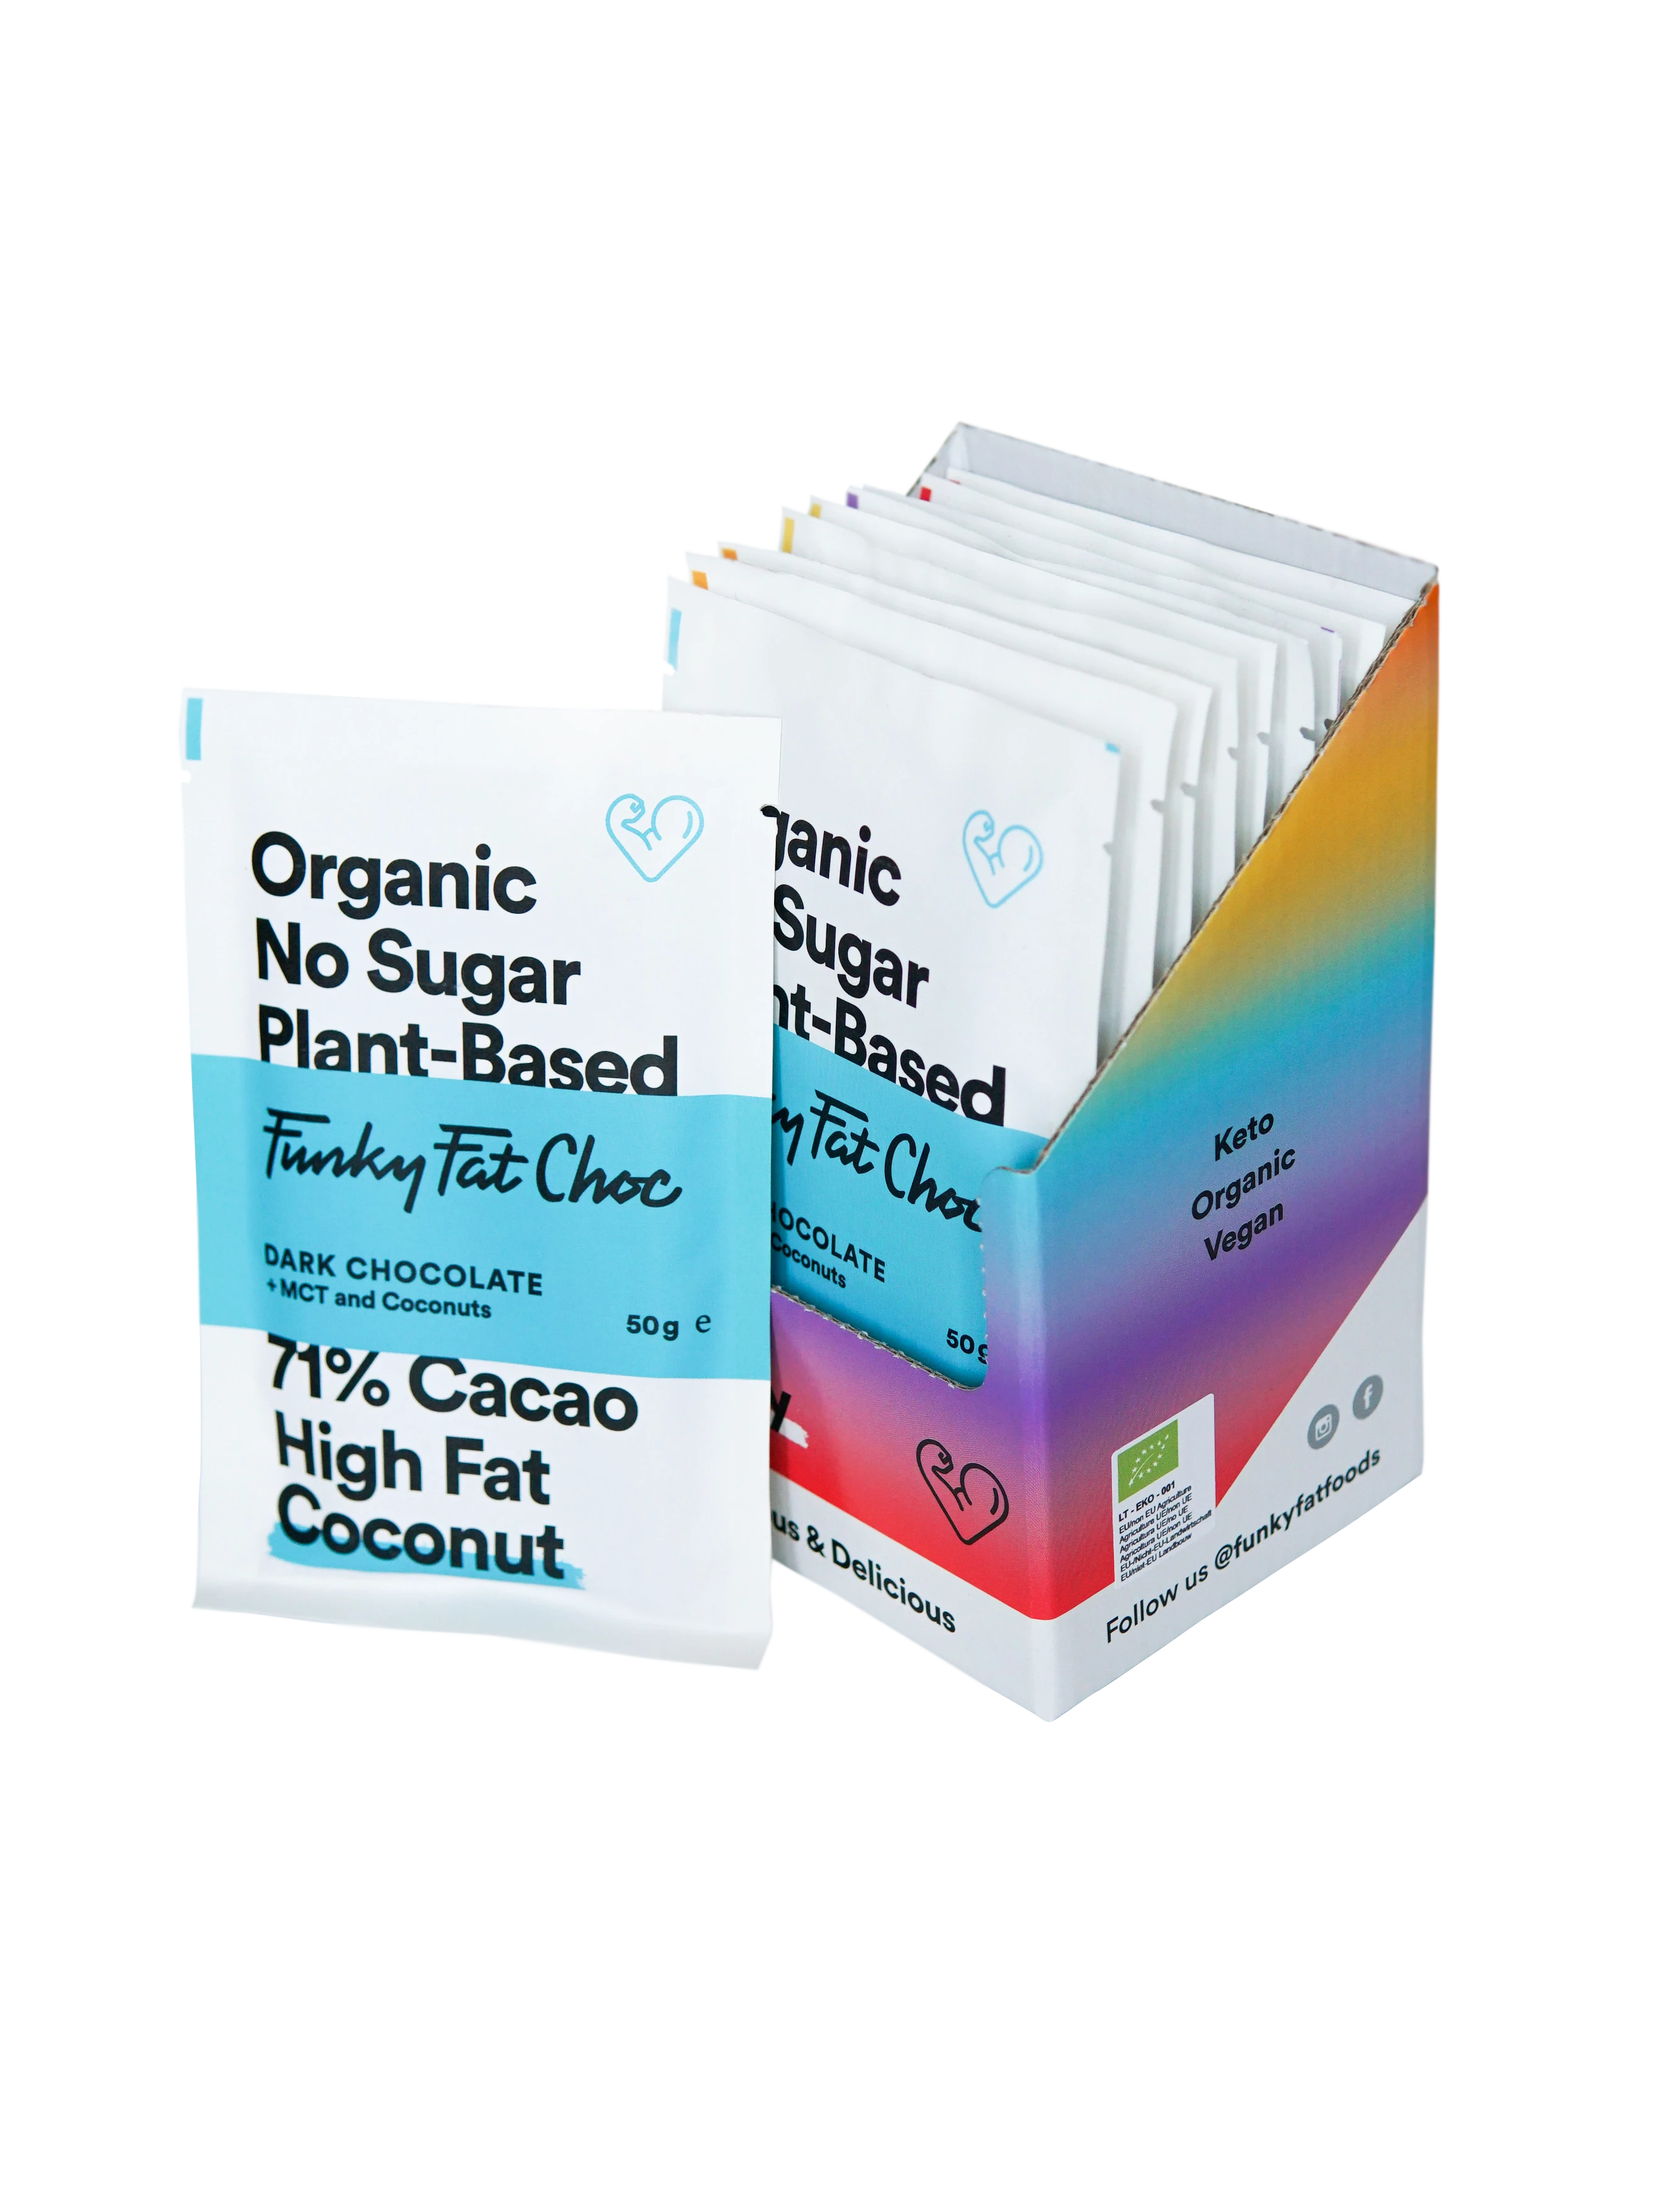 Organic Mix Chocolate Bars, x10 Total (x2 White Chocolate, x2 Dark Chocolate, x2 Coconut, x2 Hazelnuts, x2 Coffee) - FUNKY FAT CHOC